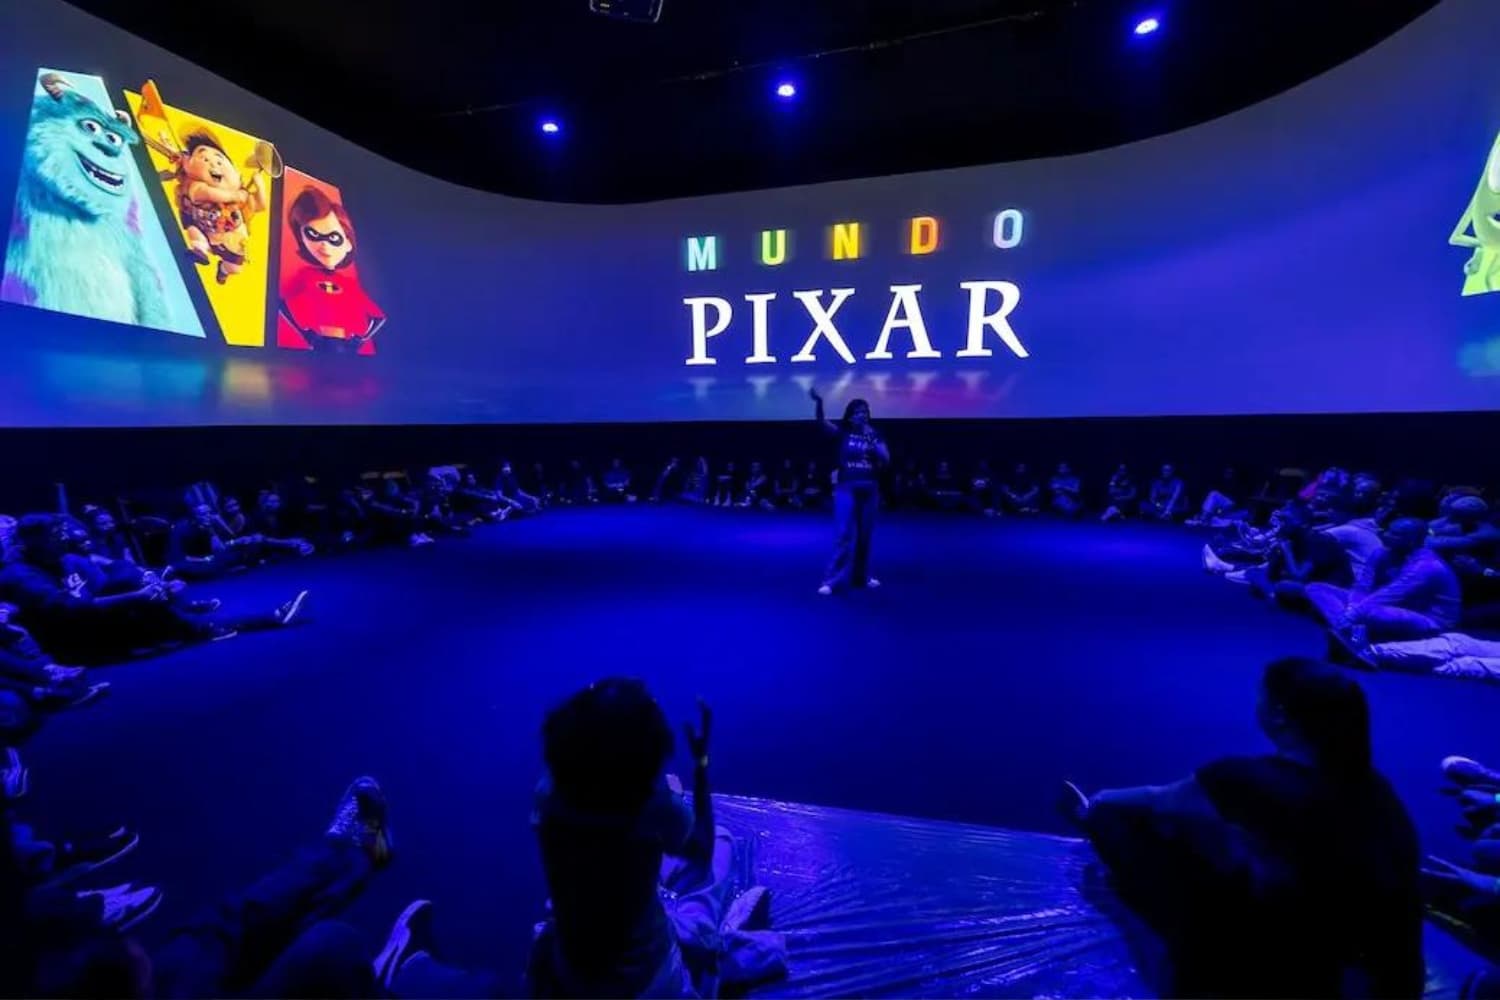 Mundo Pixar Madrid: la mayor exposición de Pixar en IFEMA